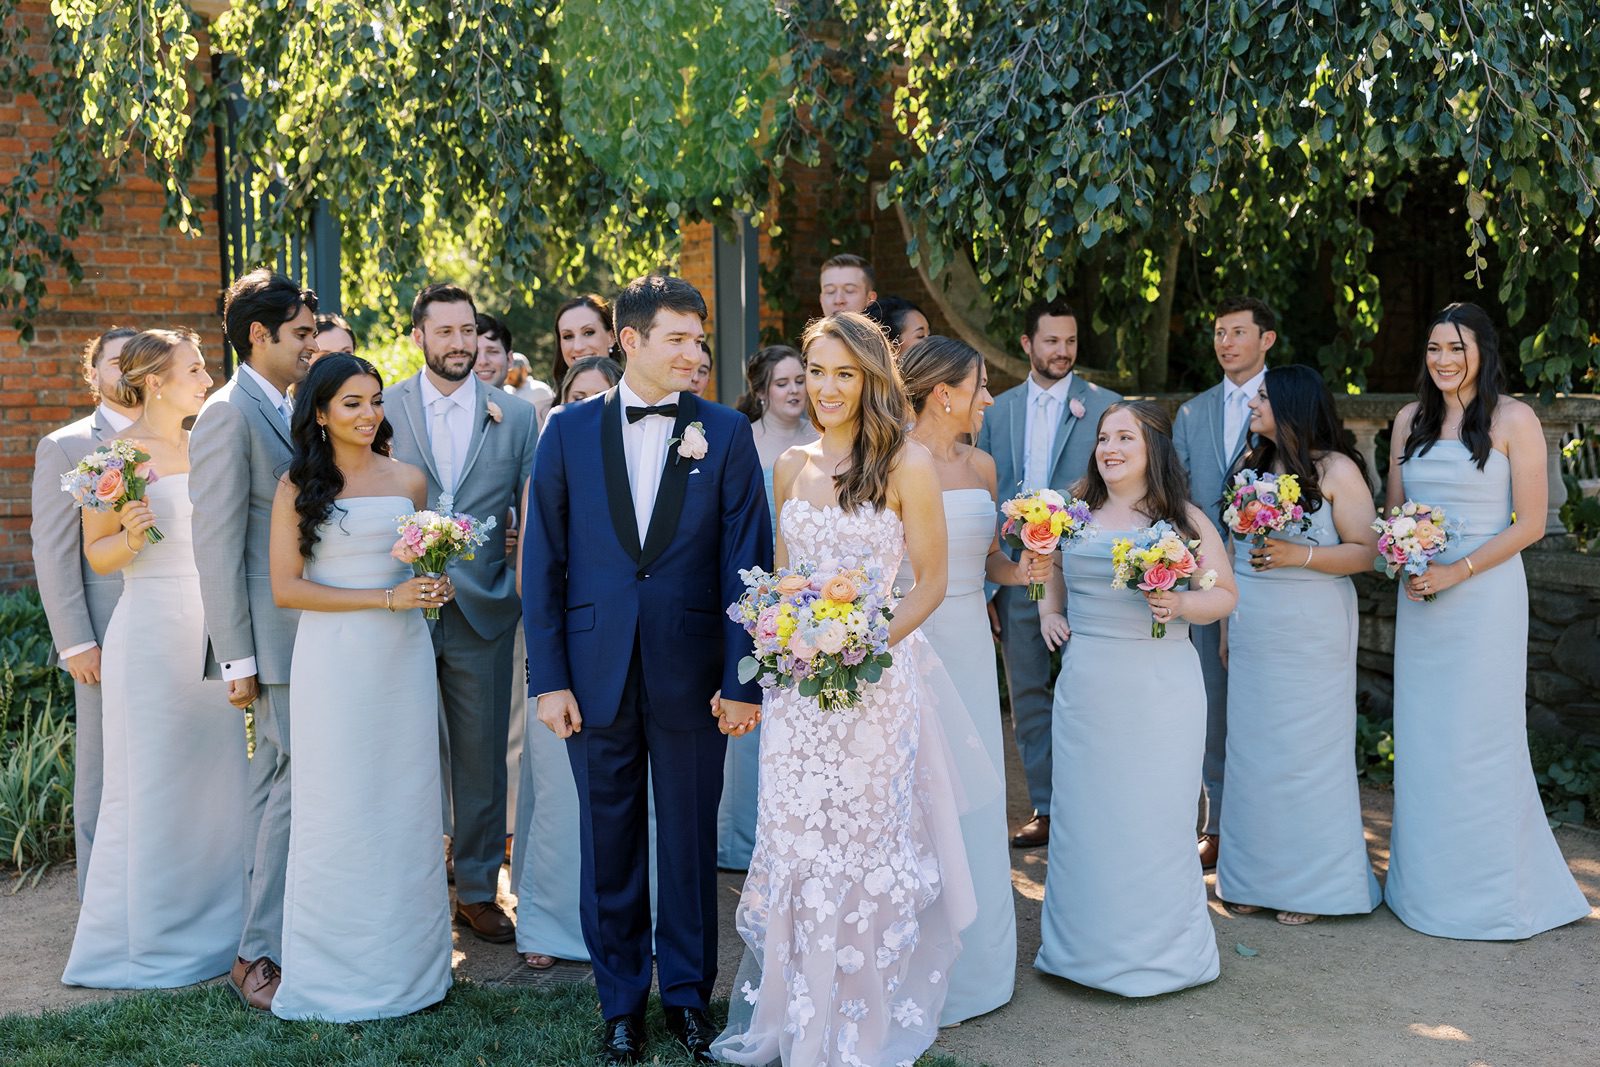 Wedding party explores during the Chicago Botanic Garden wedding photos